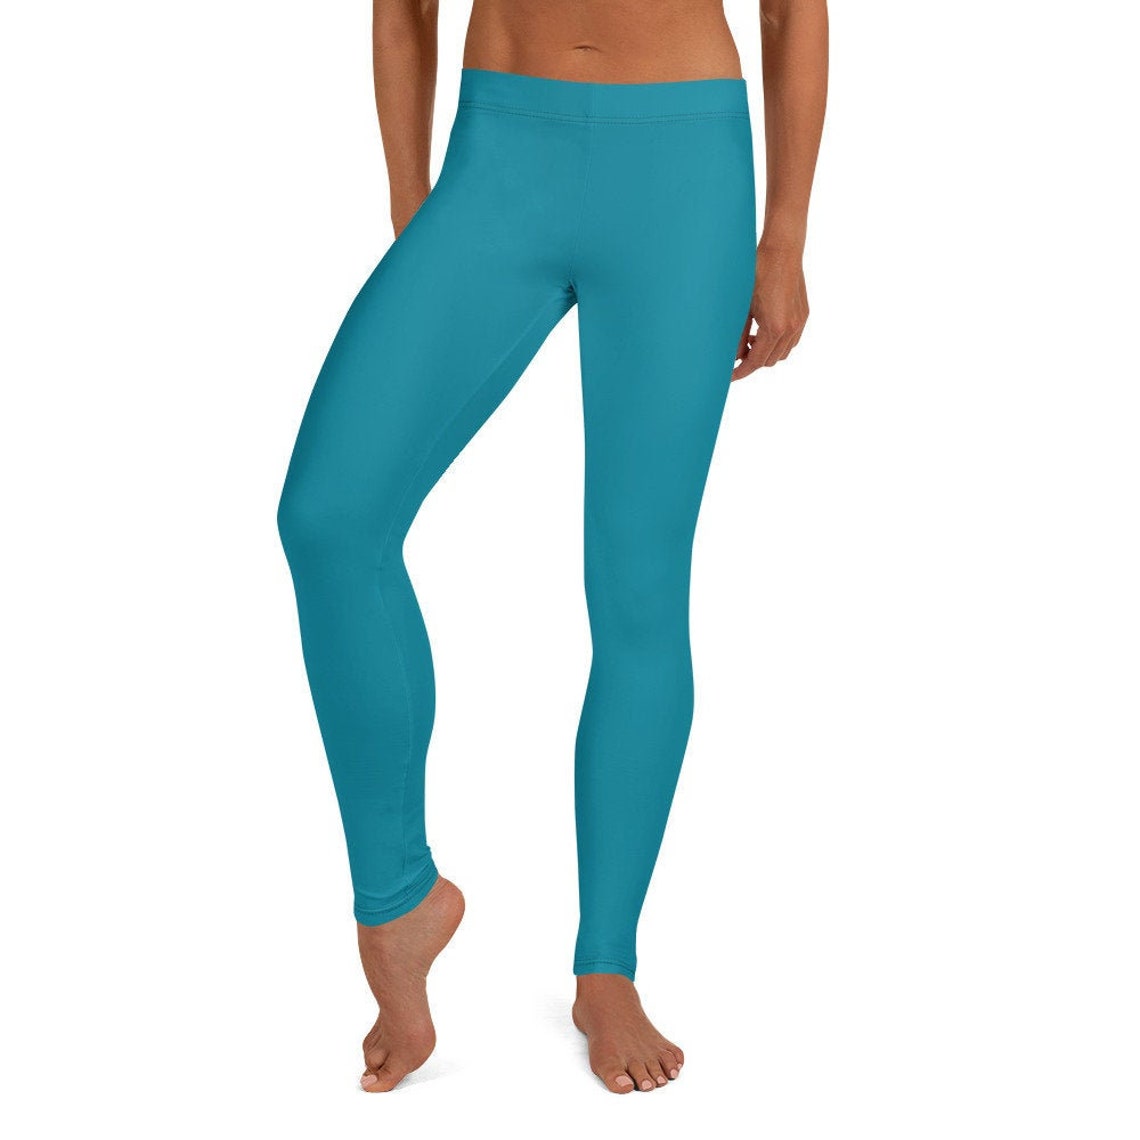 Women's Leggings Yoga Leggings Turquoise Blue Graphic - Etsy